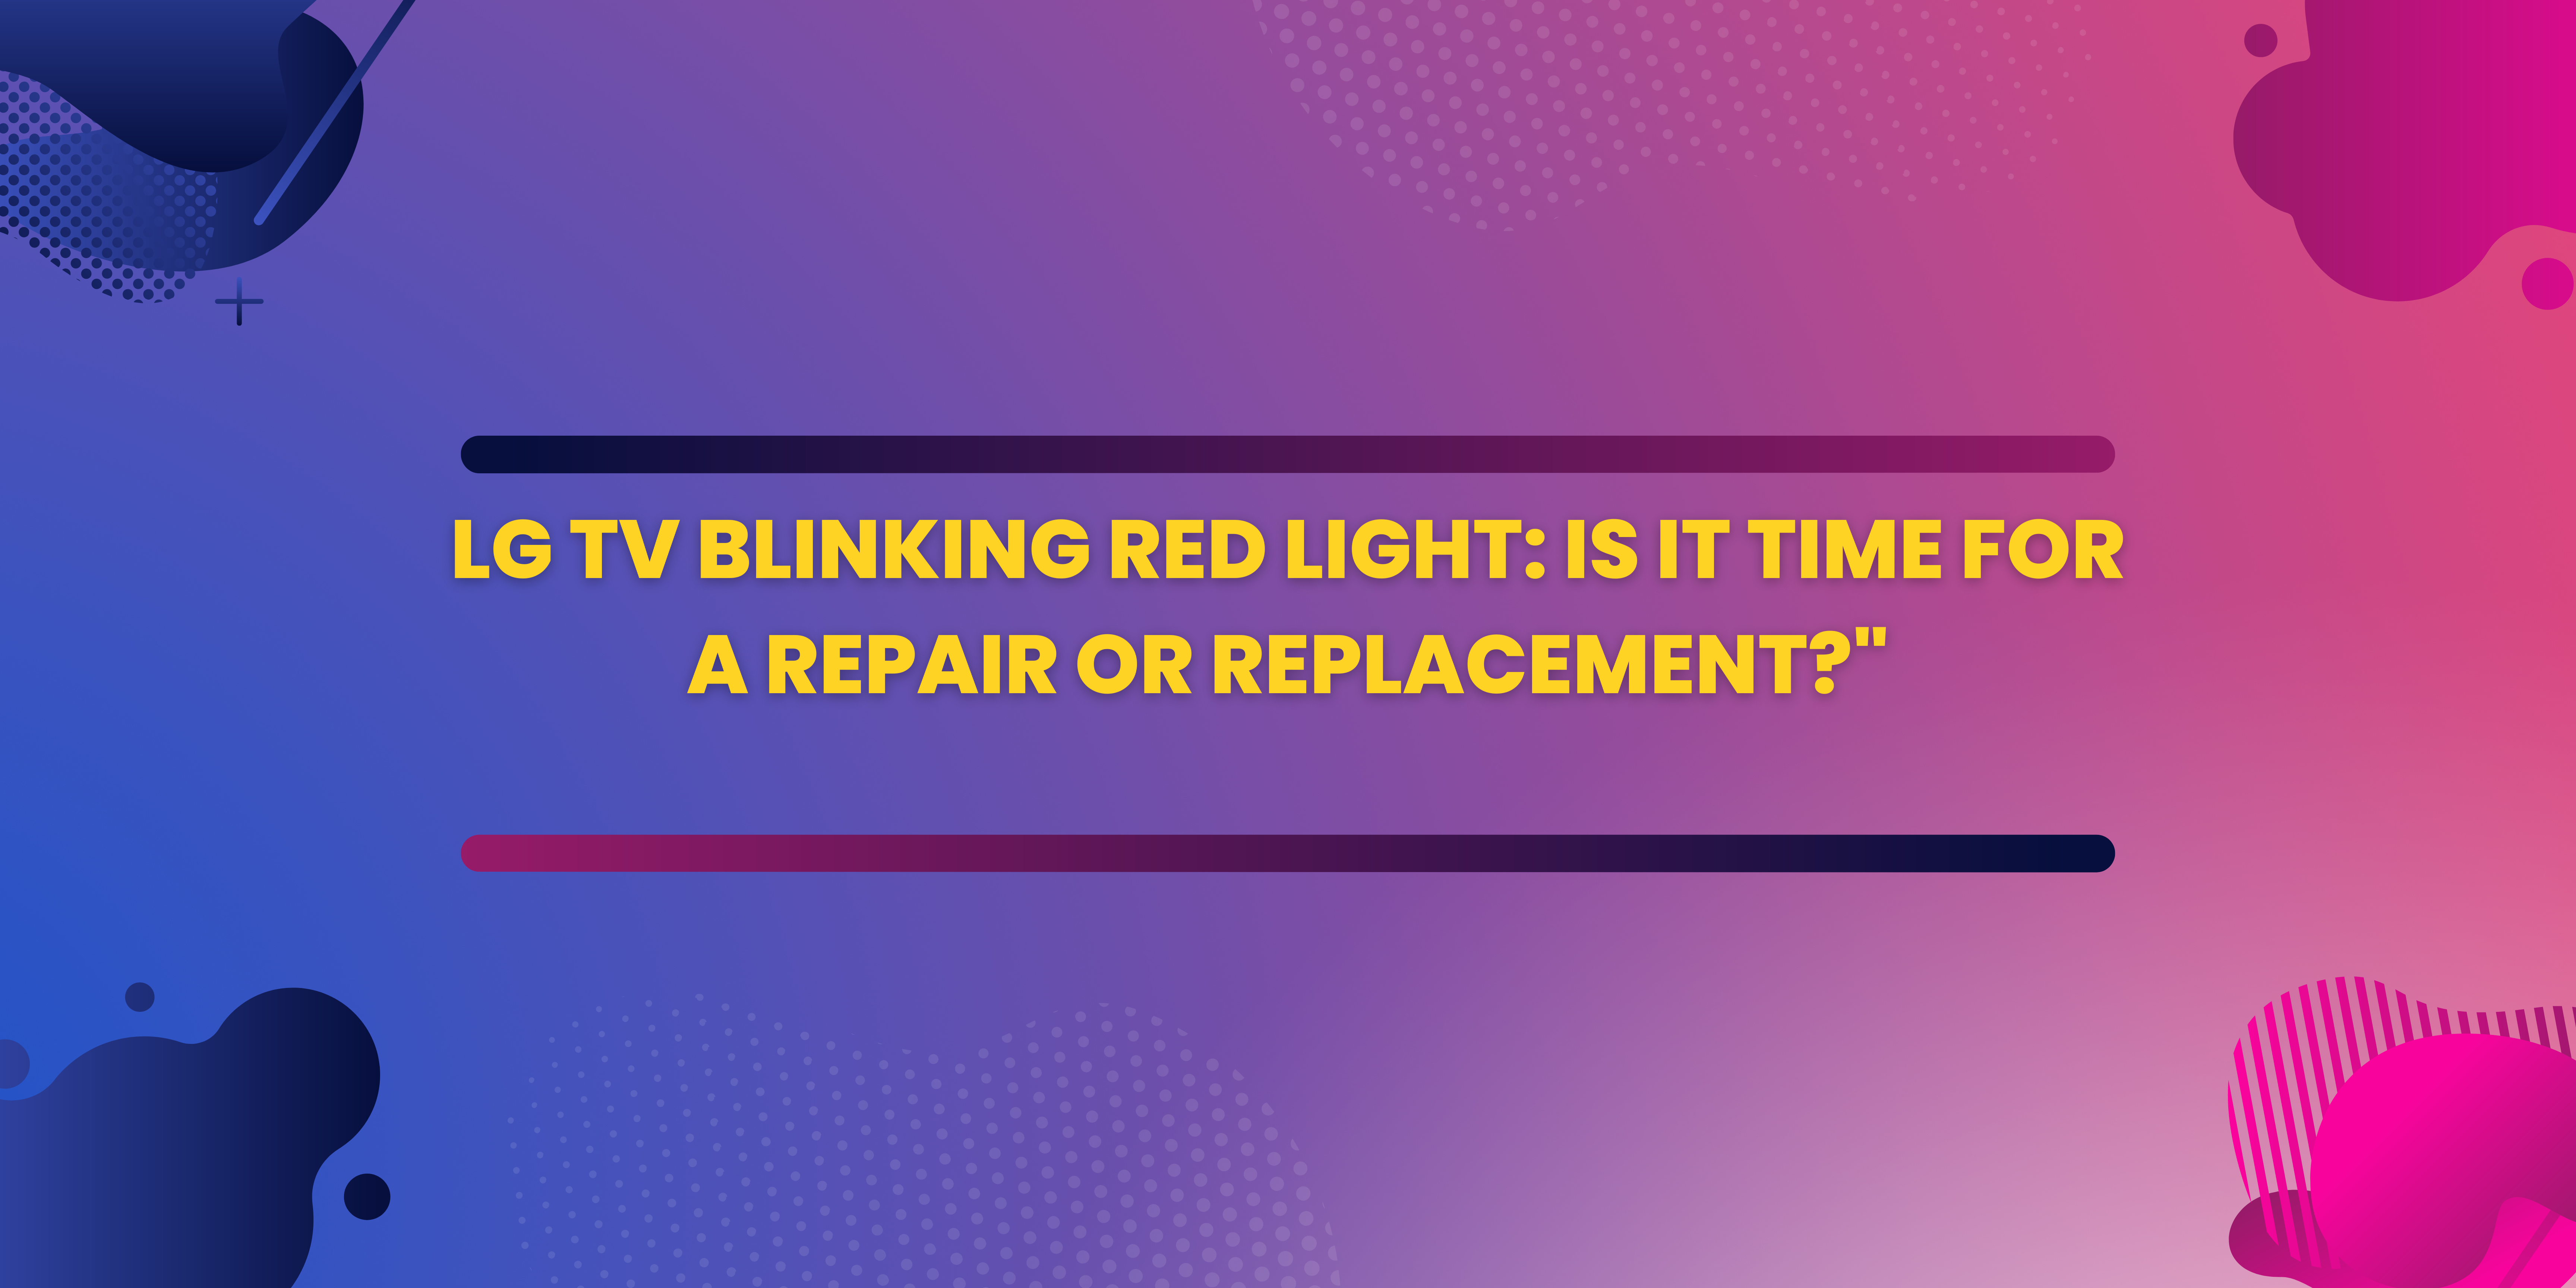 Expert Tips for Resolving LG TV Blinking Red Light Issues